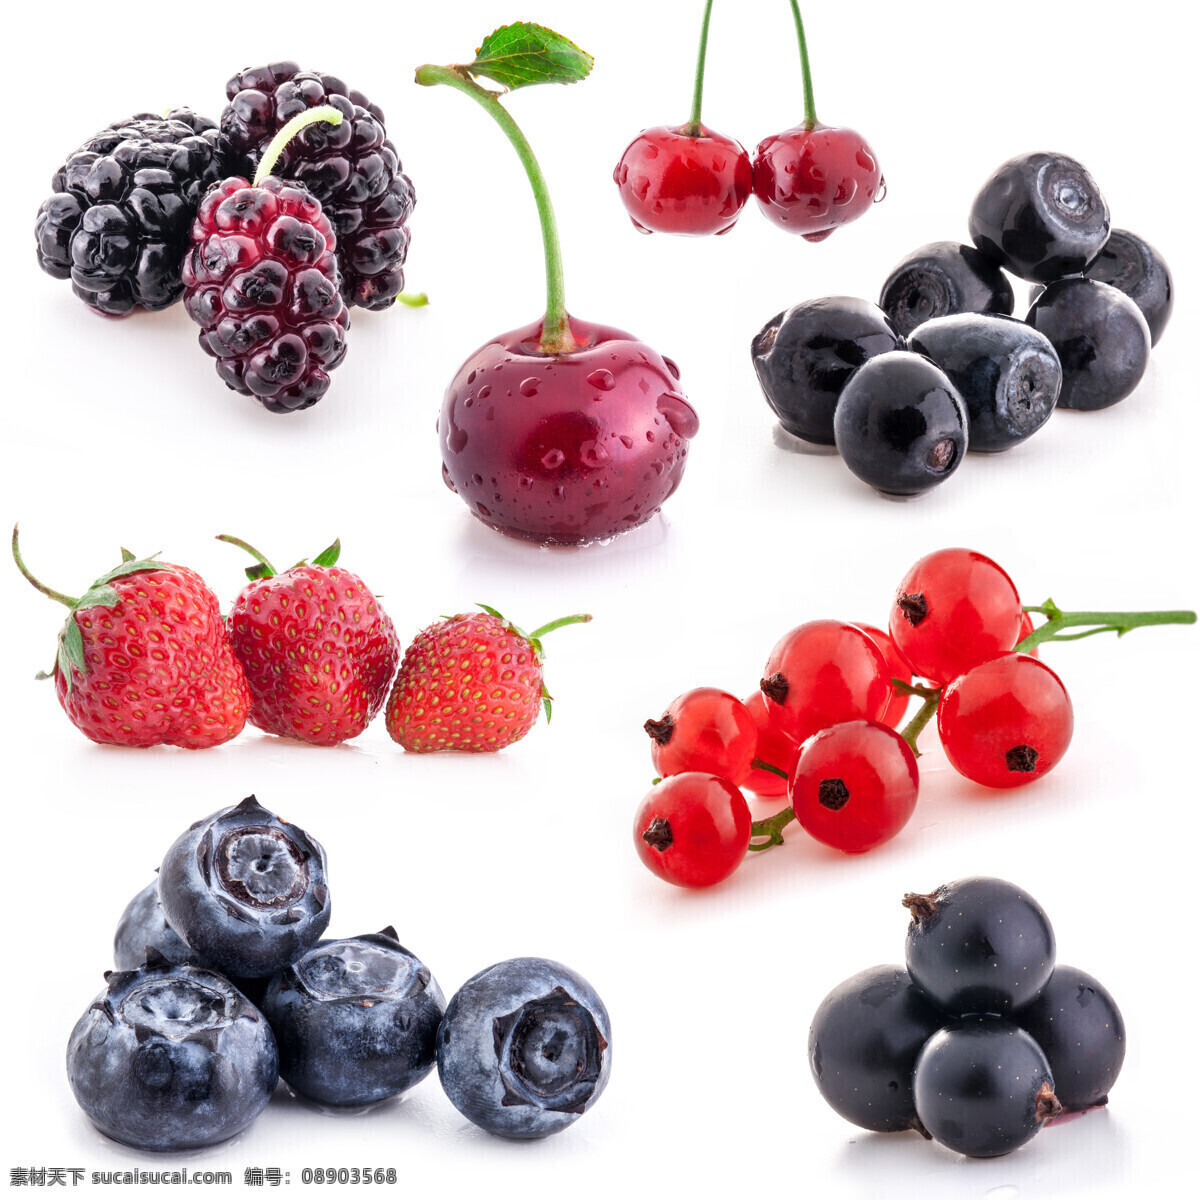 水果 图集 桑葚 草莓 柿子 蓝莓 樱桃 水果图片 餐饮美食